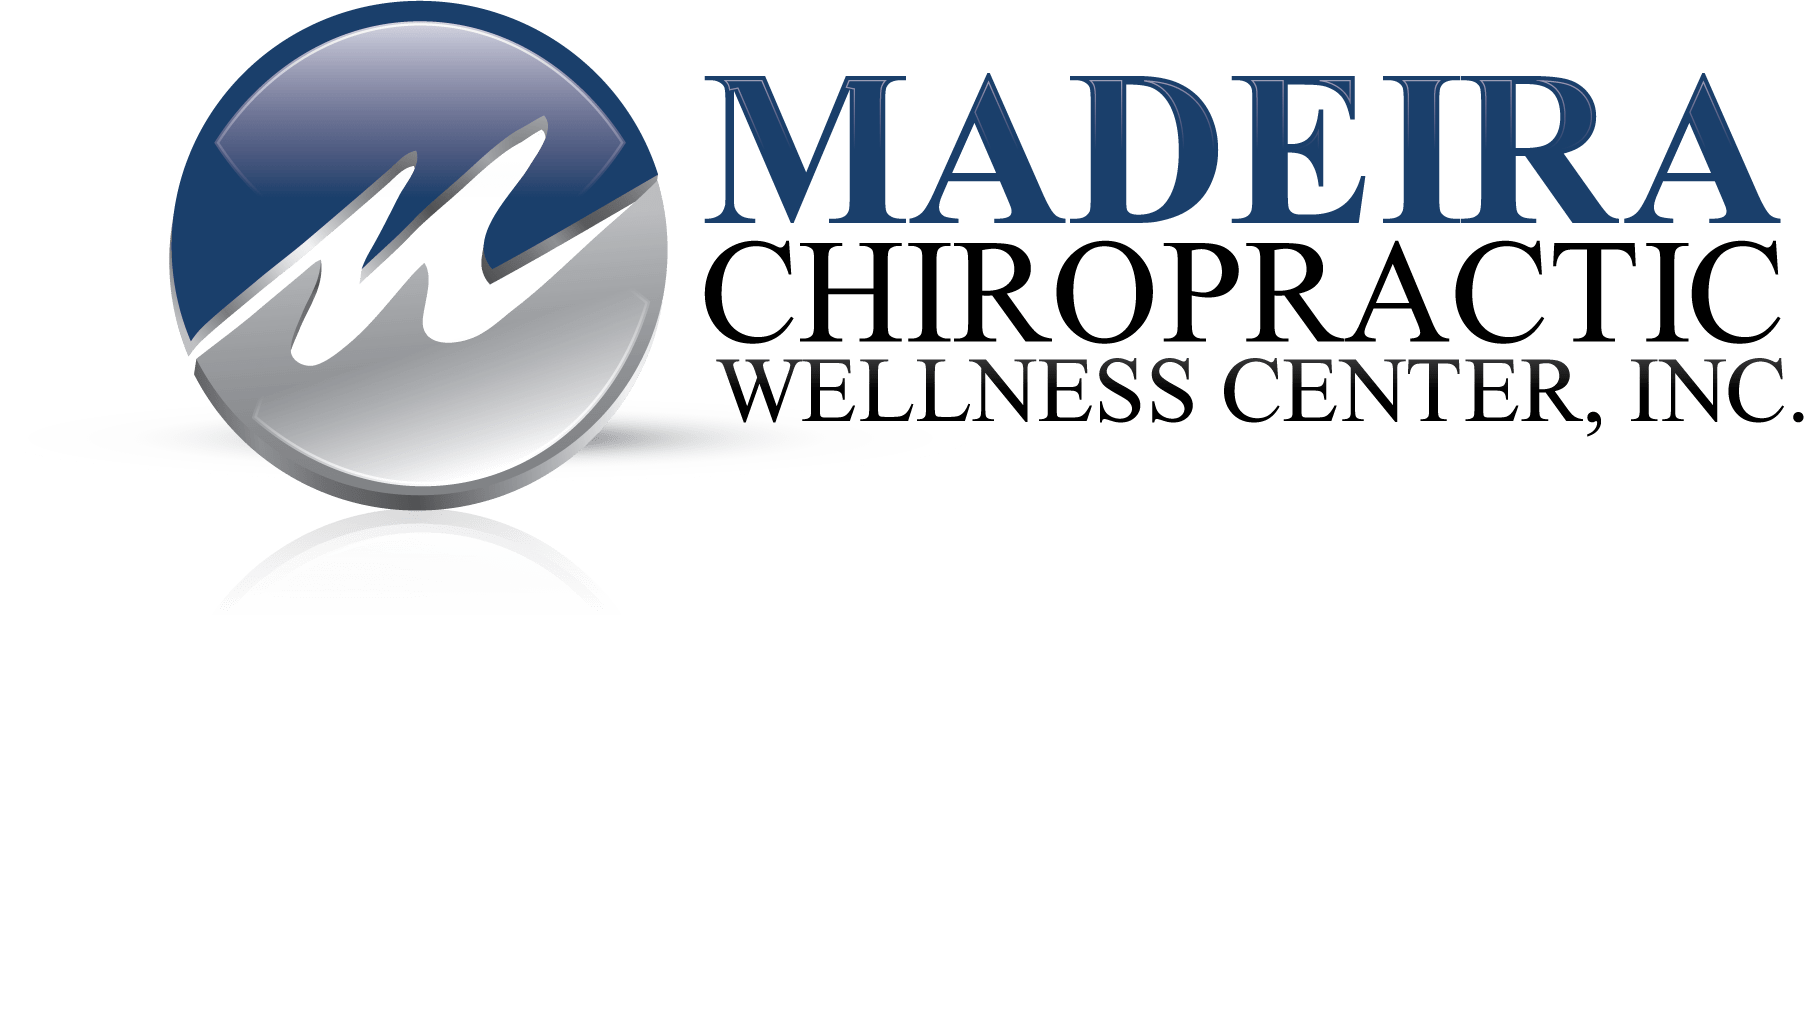 Madeira Chiropractic Wellness Center, Inc.